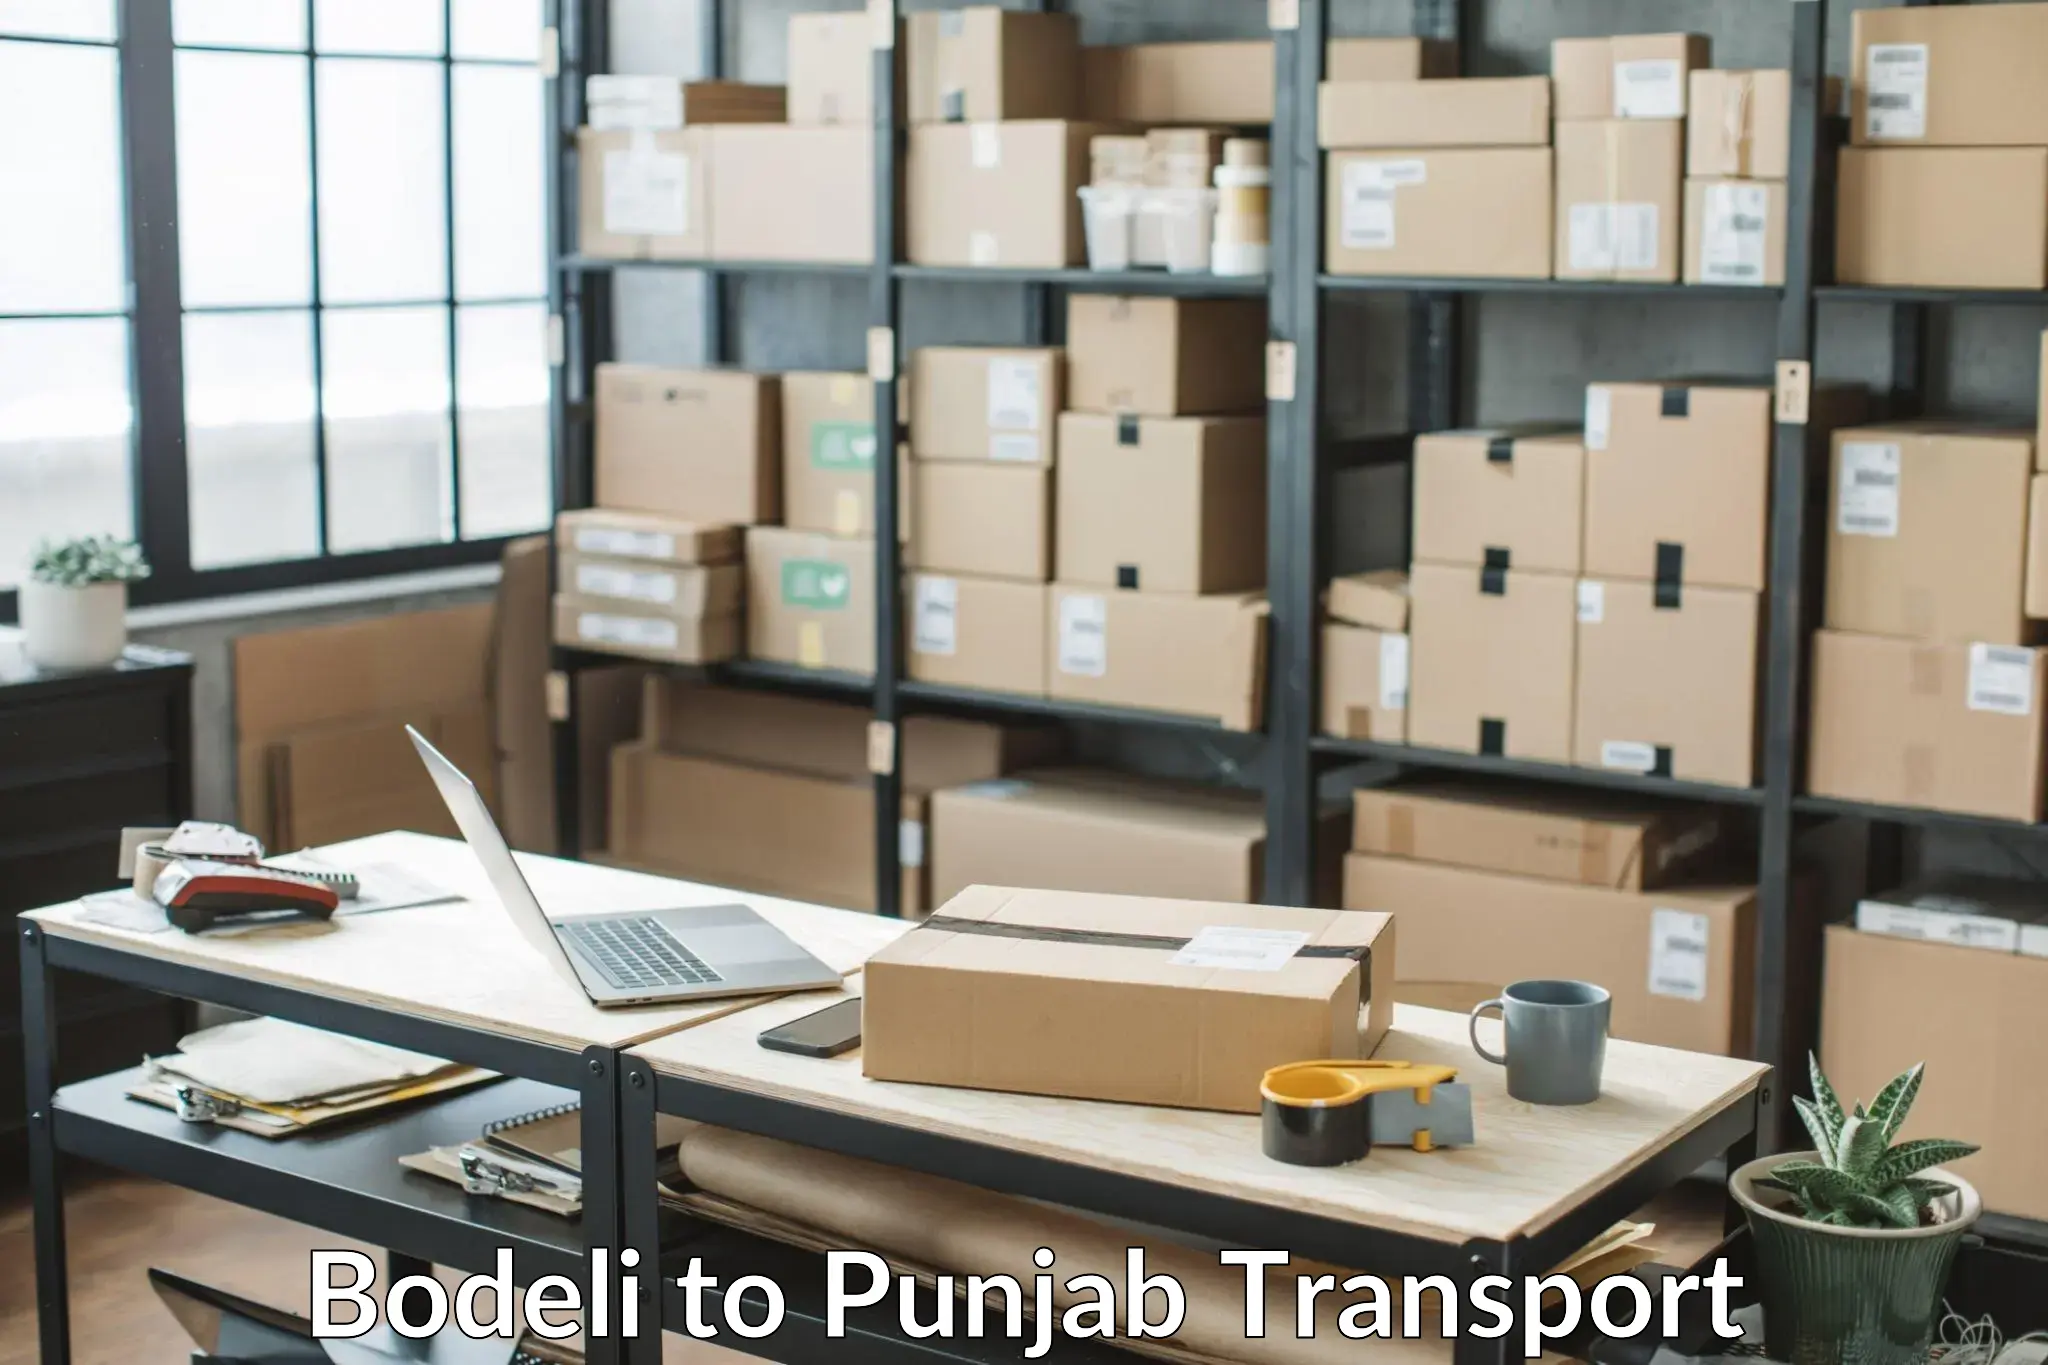 Road transport online services Bodeli to Punjab